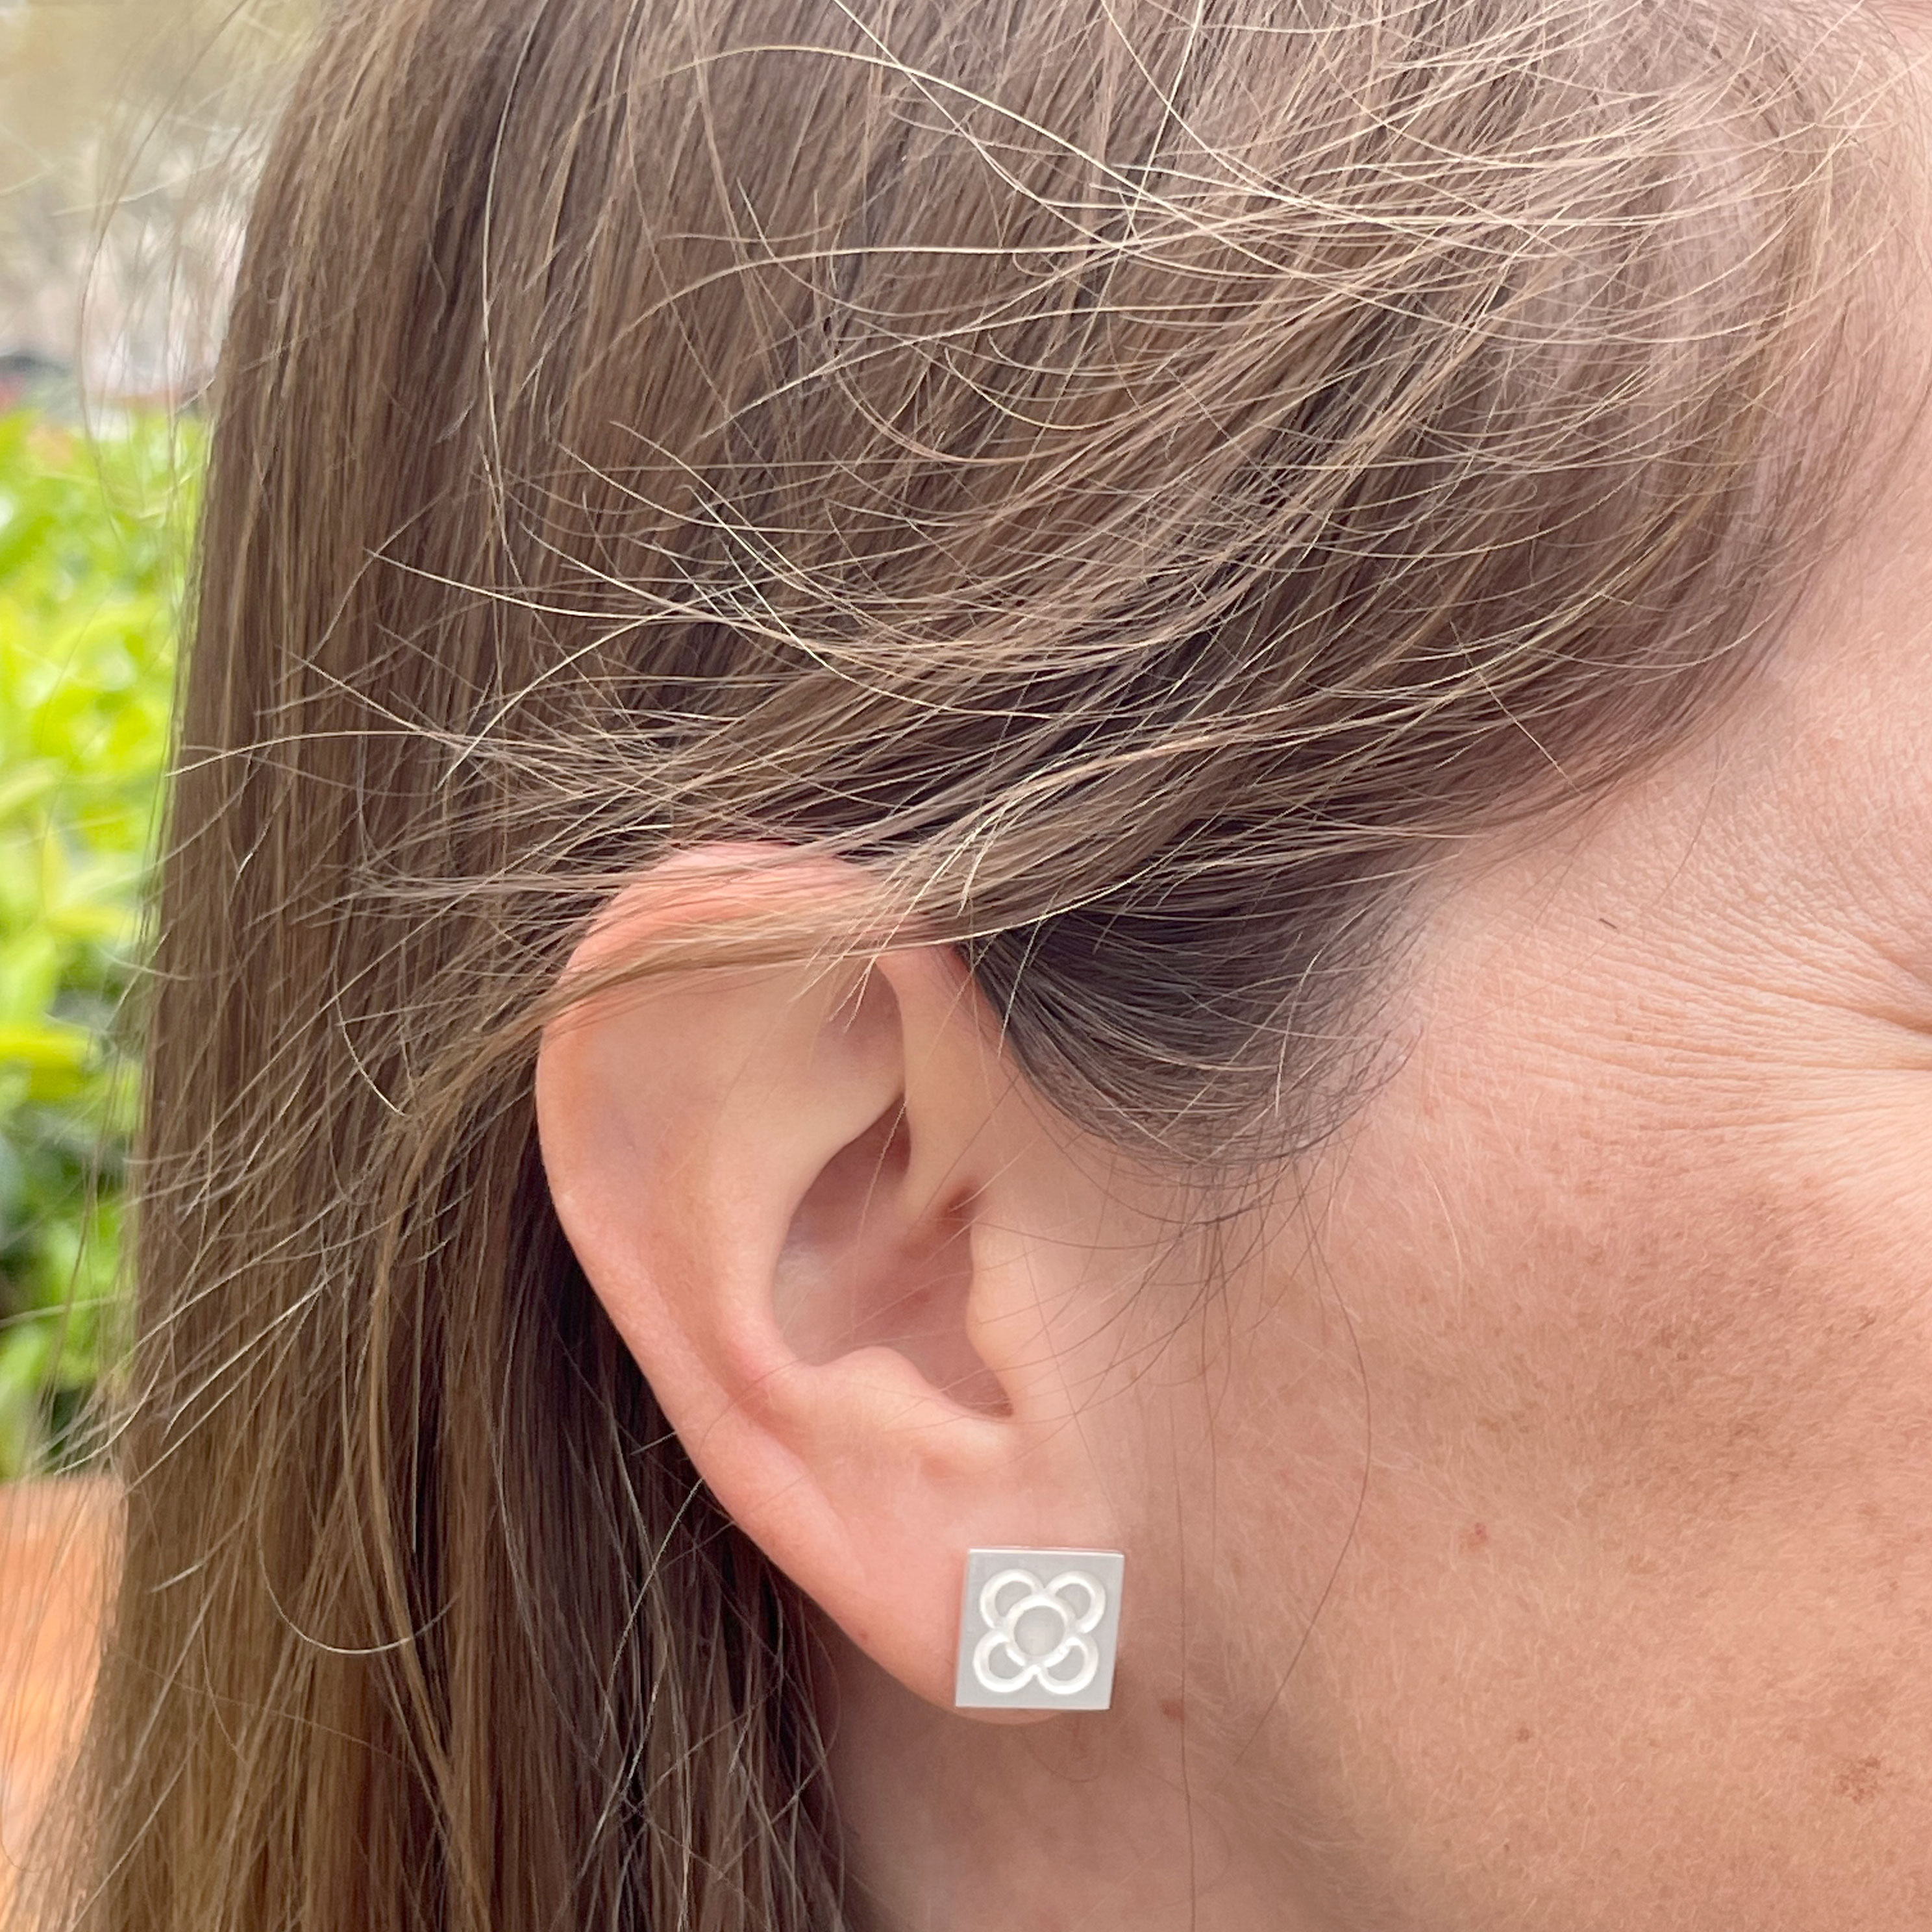 PANOT small earrings